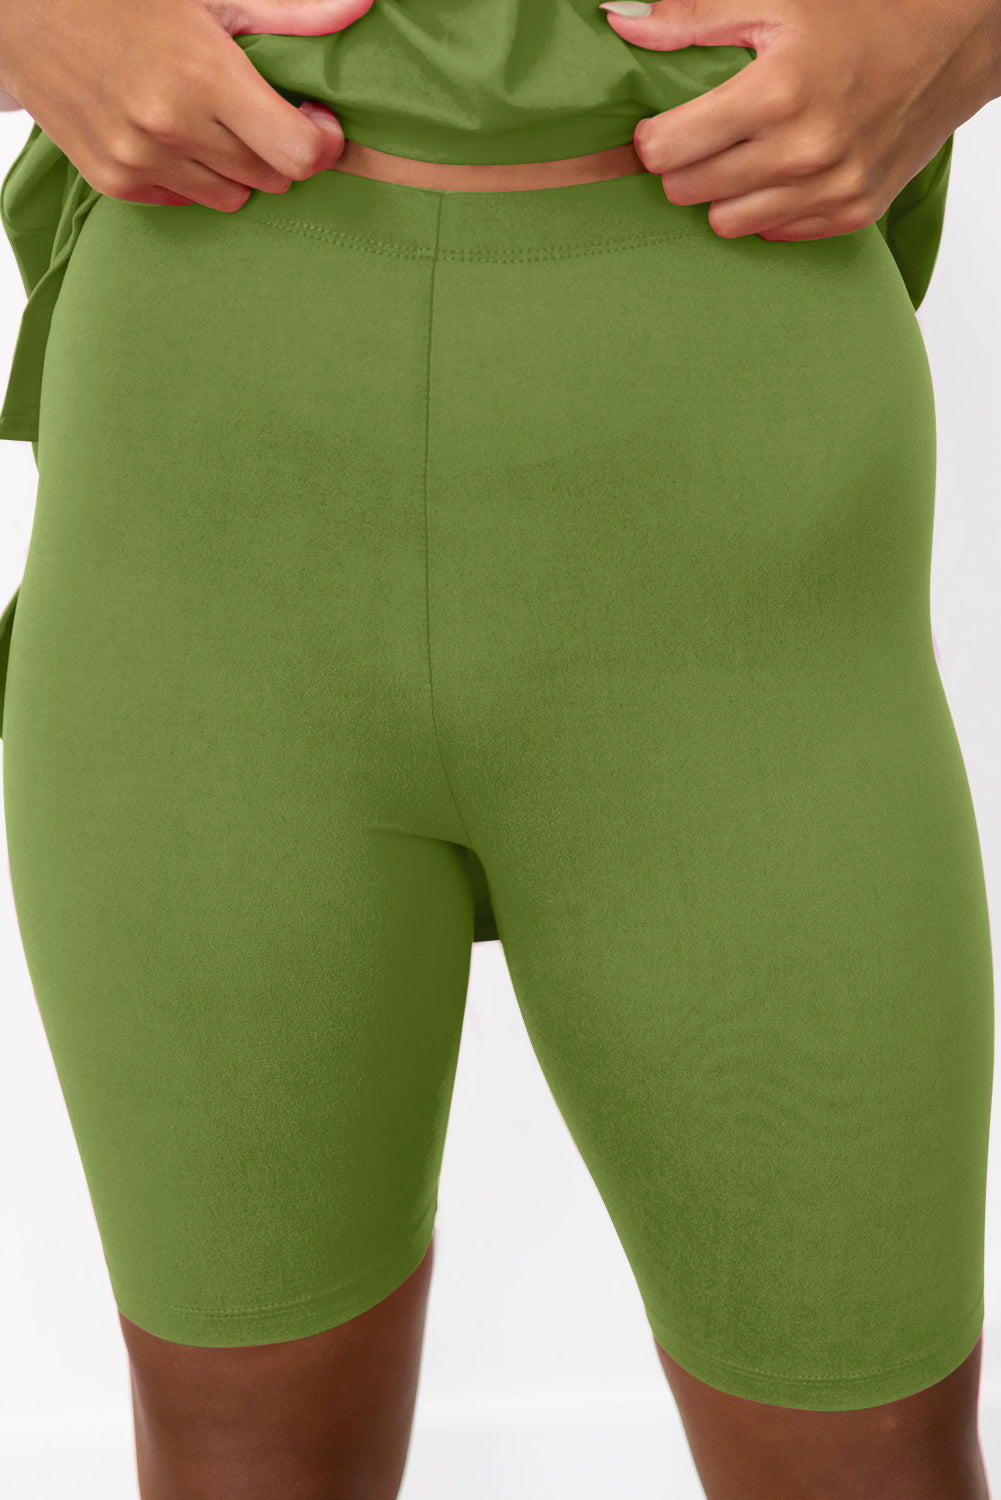 Komplet majice s tuniko in oprijetimi kratkimi hlačami špinačno zelene barve z enobarvnim razcepljenim robom